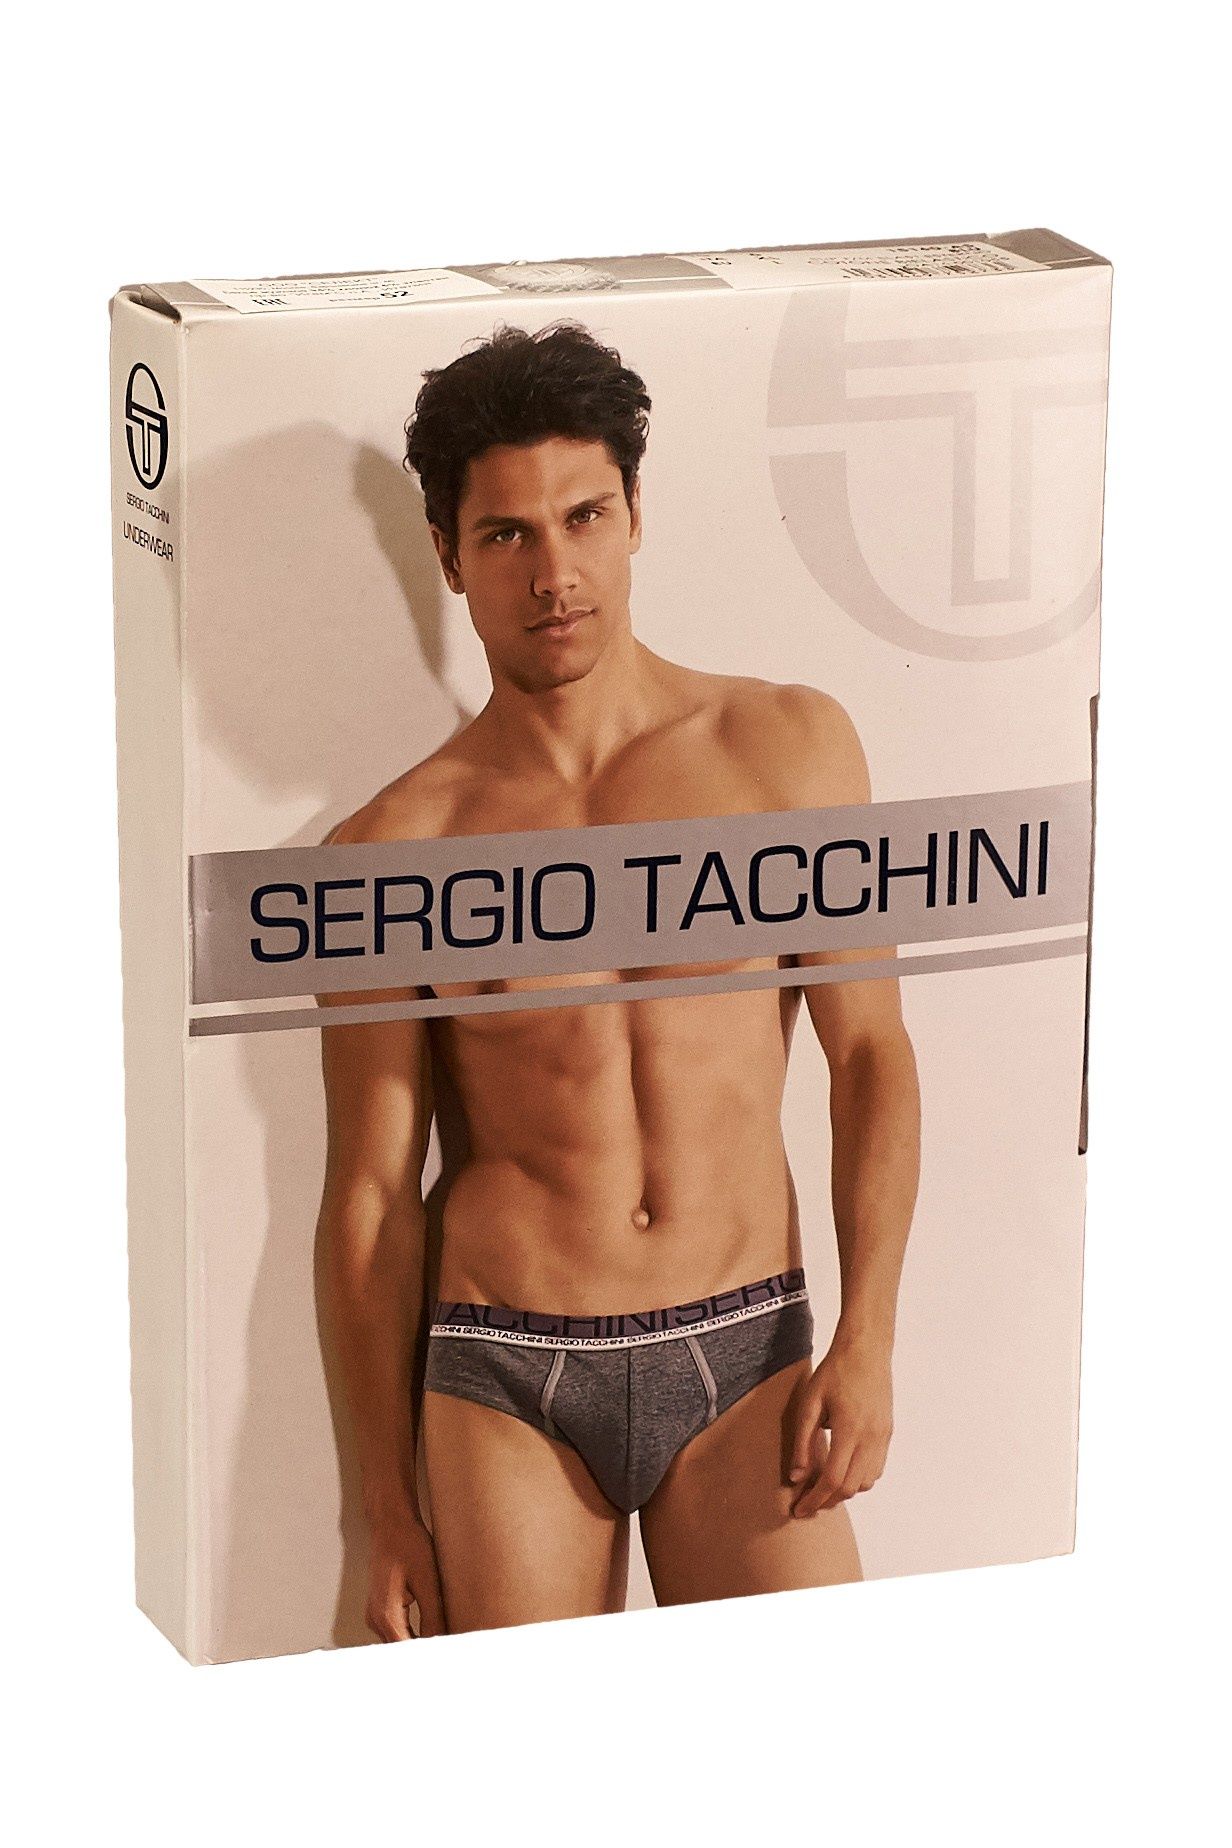  SERGIO TACCHINI,  50 